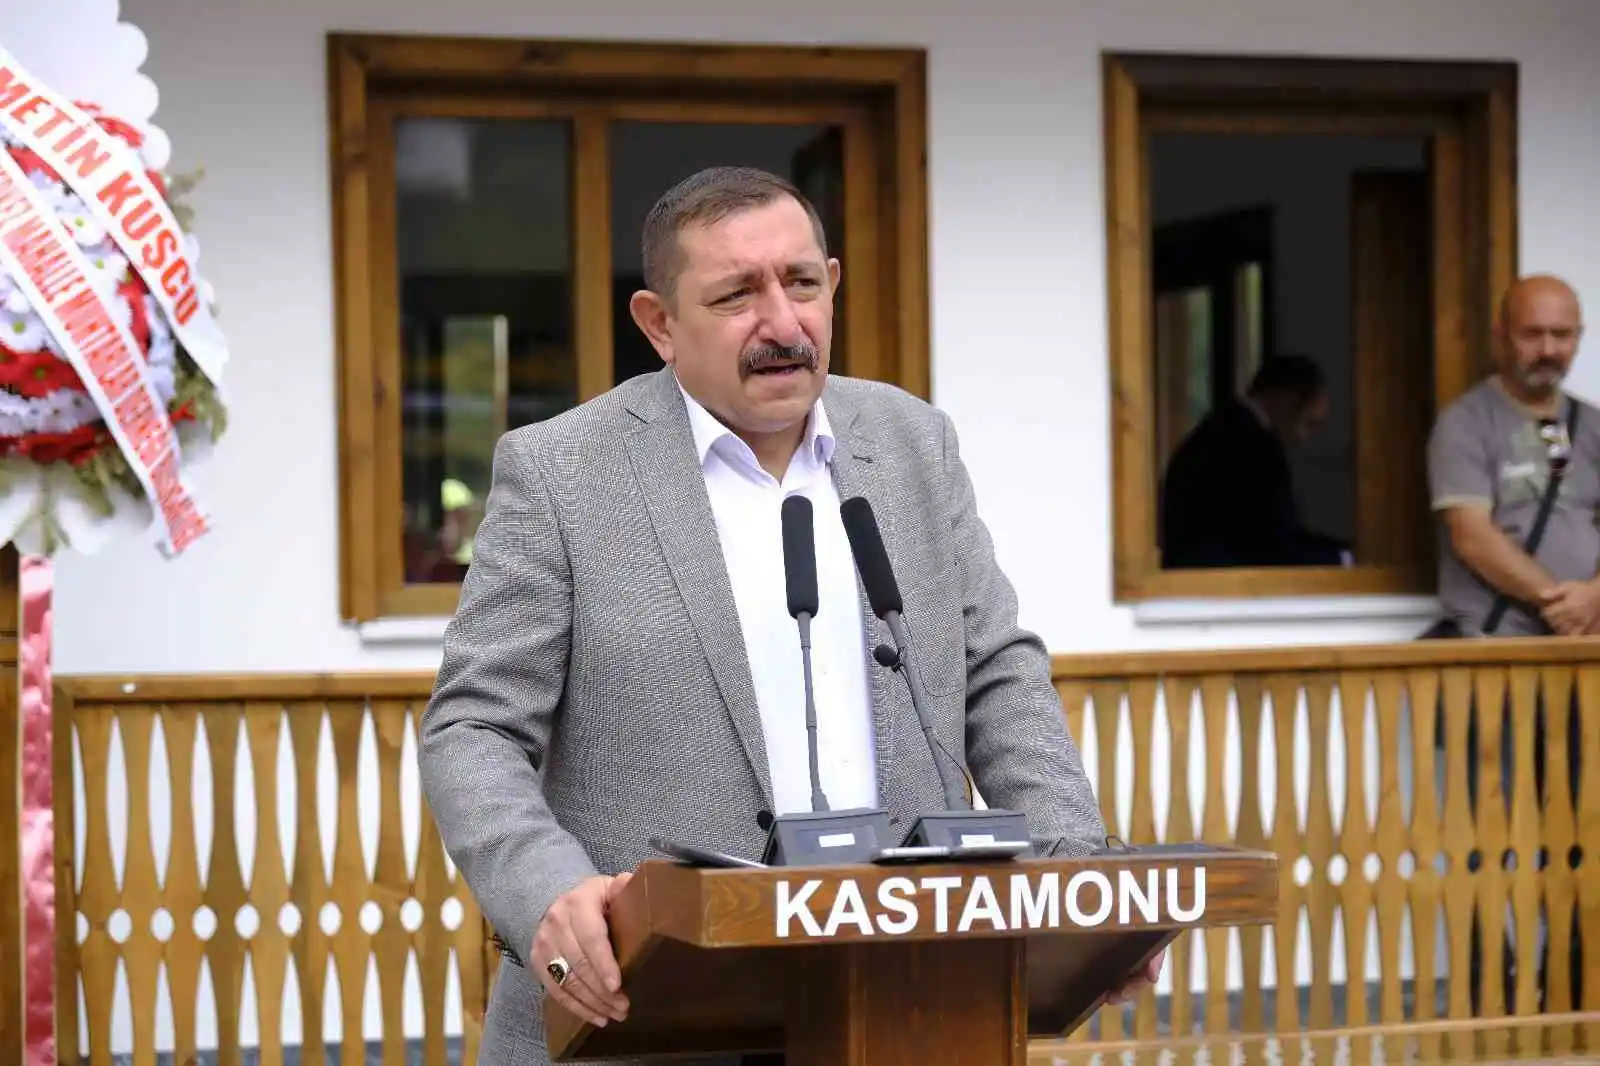 Kastamonu Belediyesinin Olukbaşı Hizmet Binası törenle açıldı
